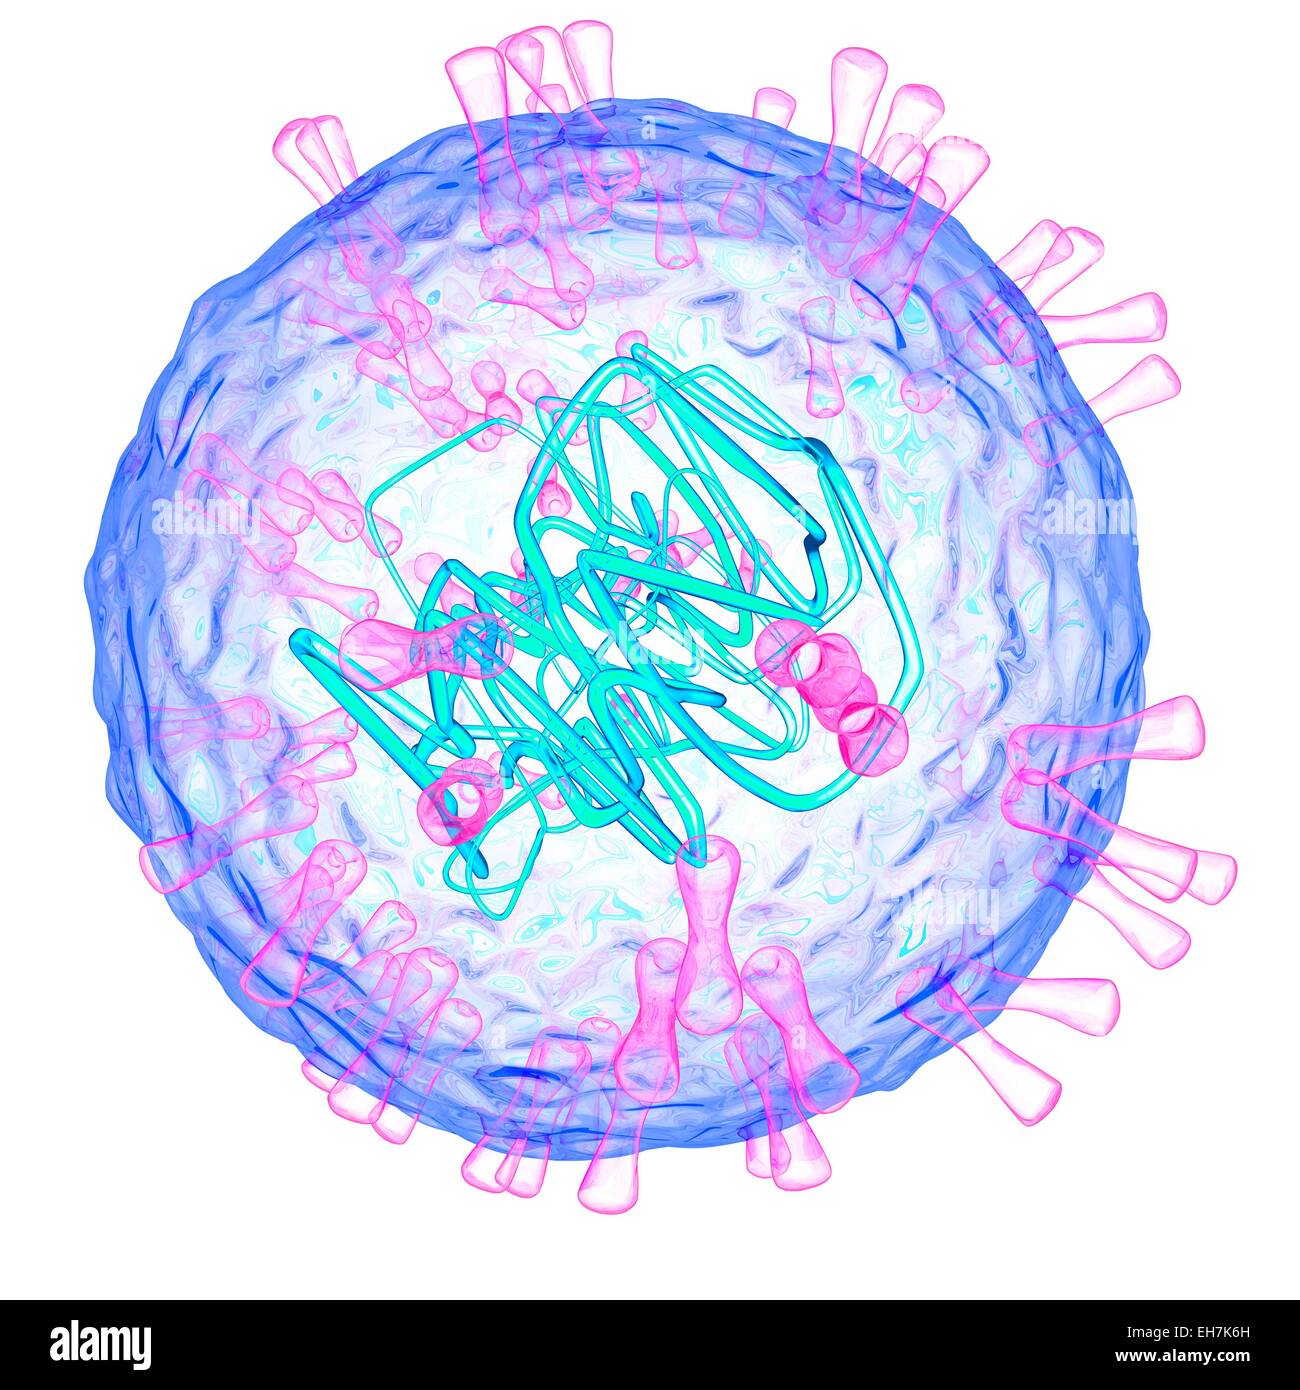 Вирус герпеса 2. Герпесвирус 8 типа микробиология.